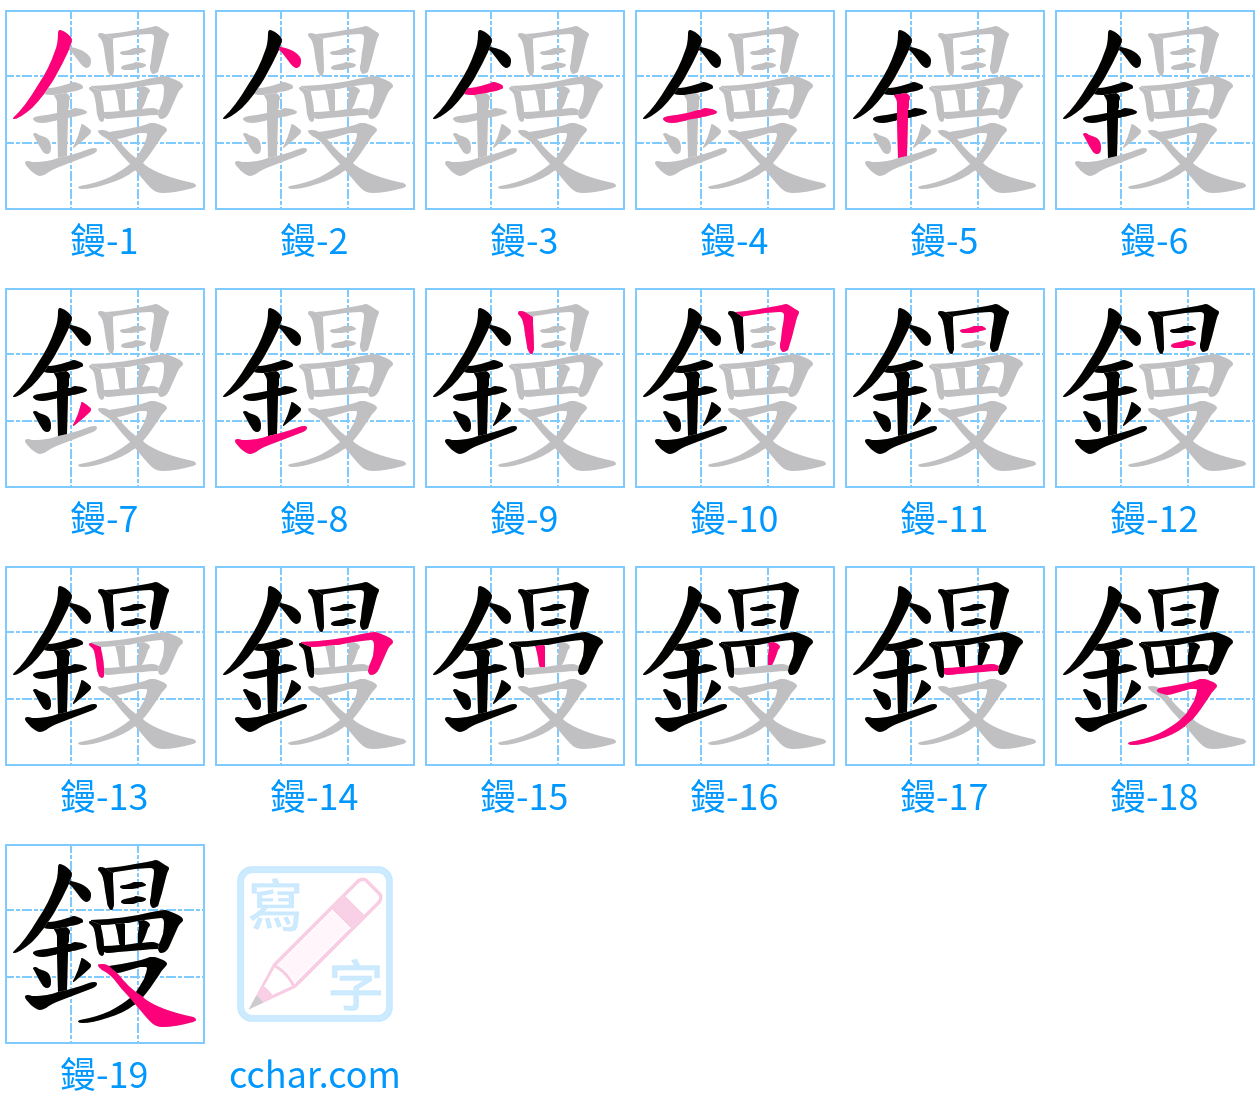 鏝 stroke order step-by-step diagram